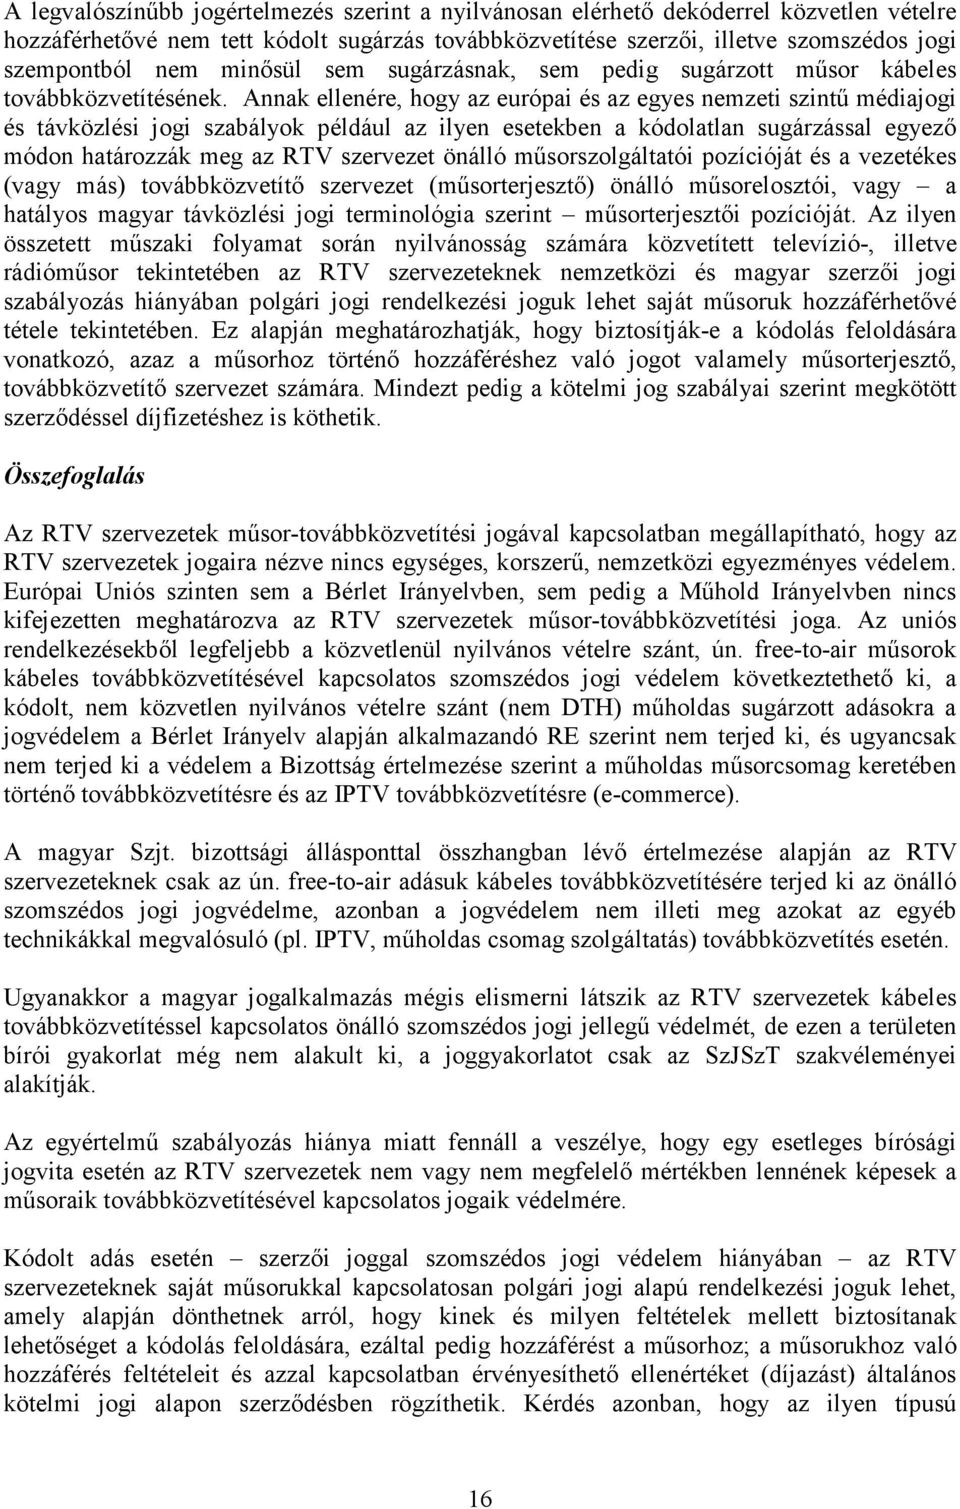 Annak ellenére, hogy az európai és az egyes nemzeti szintű médiajogi és távközlési jogi szabályok például az ilyen esetekben a kódolatlan sugárzással egyező módon határozzák meg az RTV szervezet